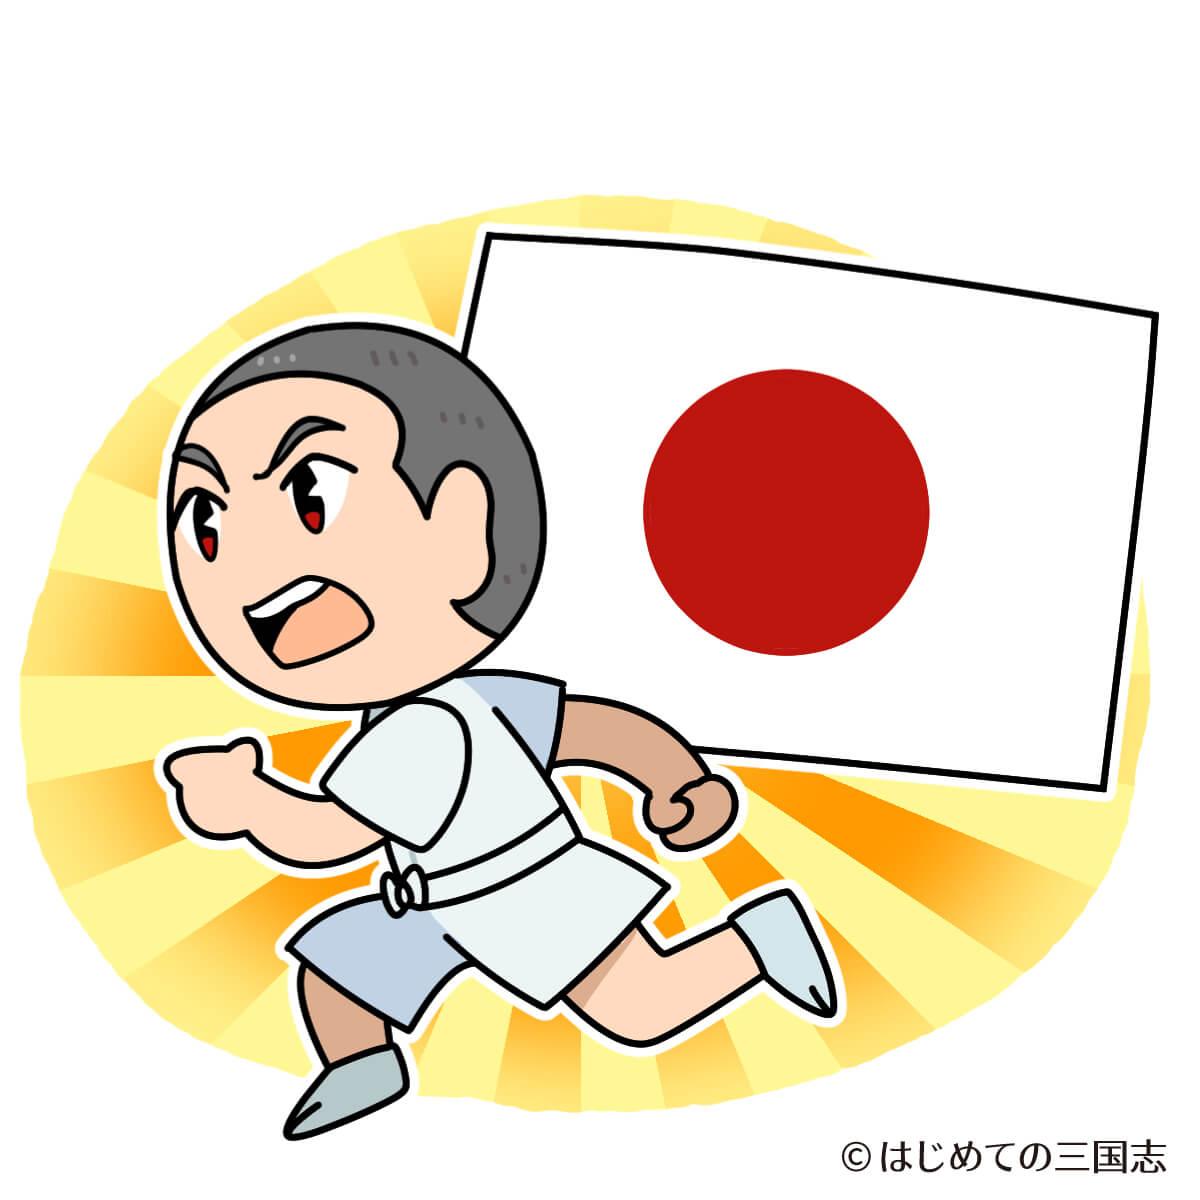 マラソン日本代表として走る中村勘九郎 いだてん